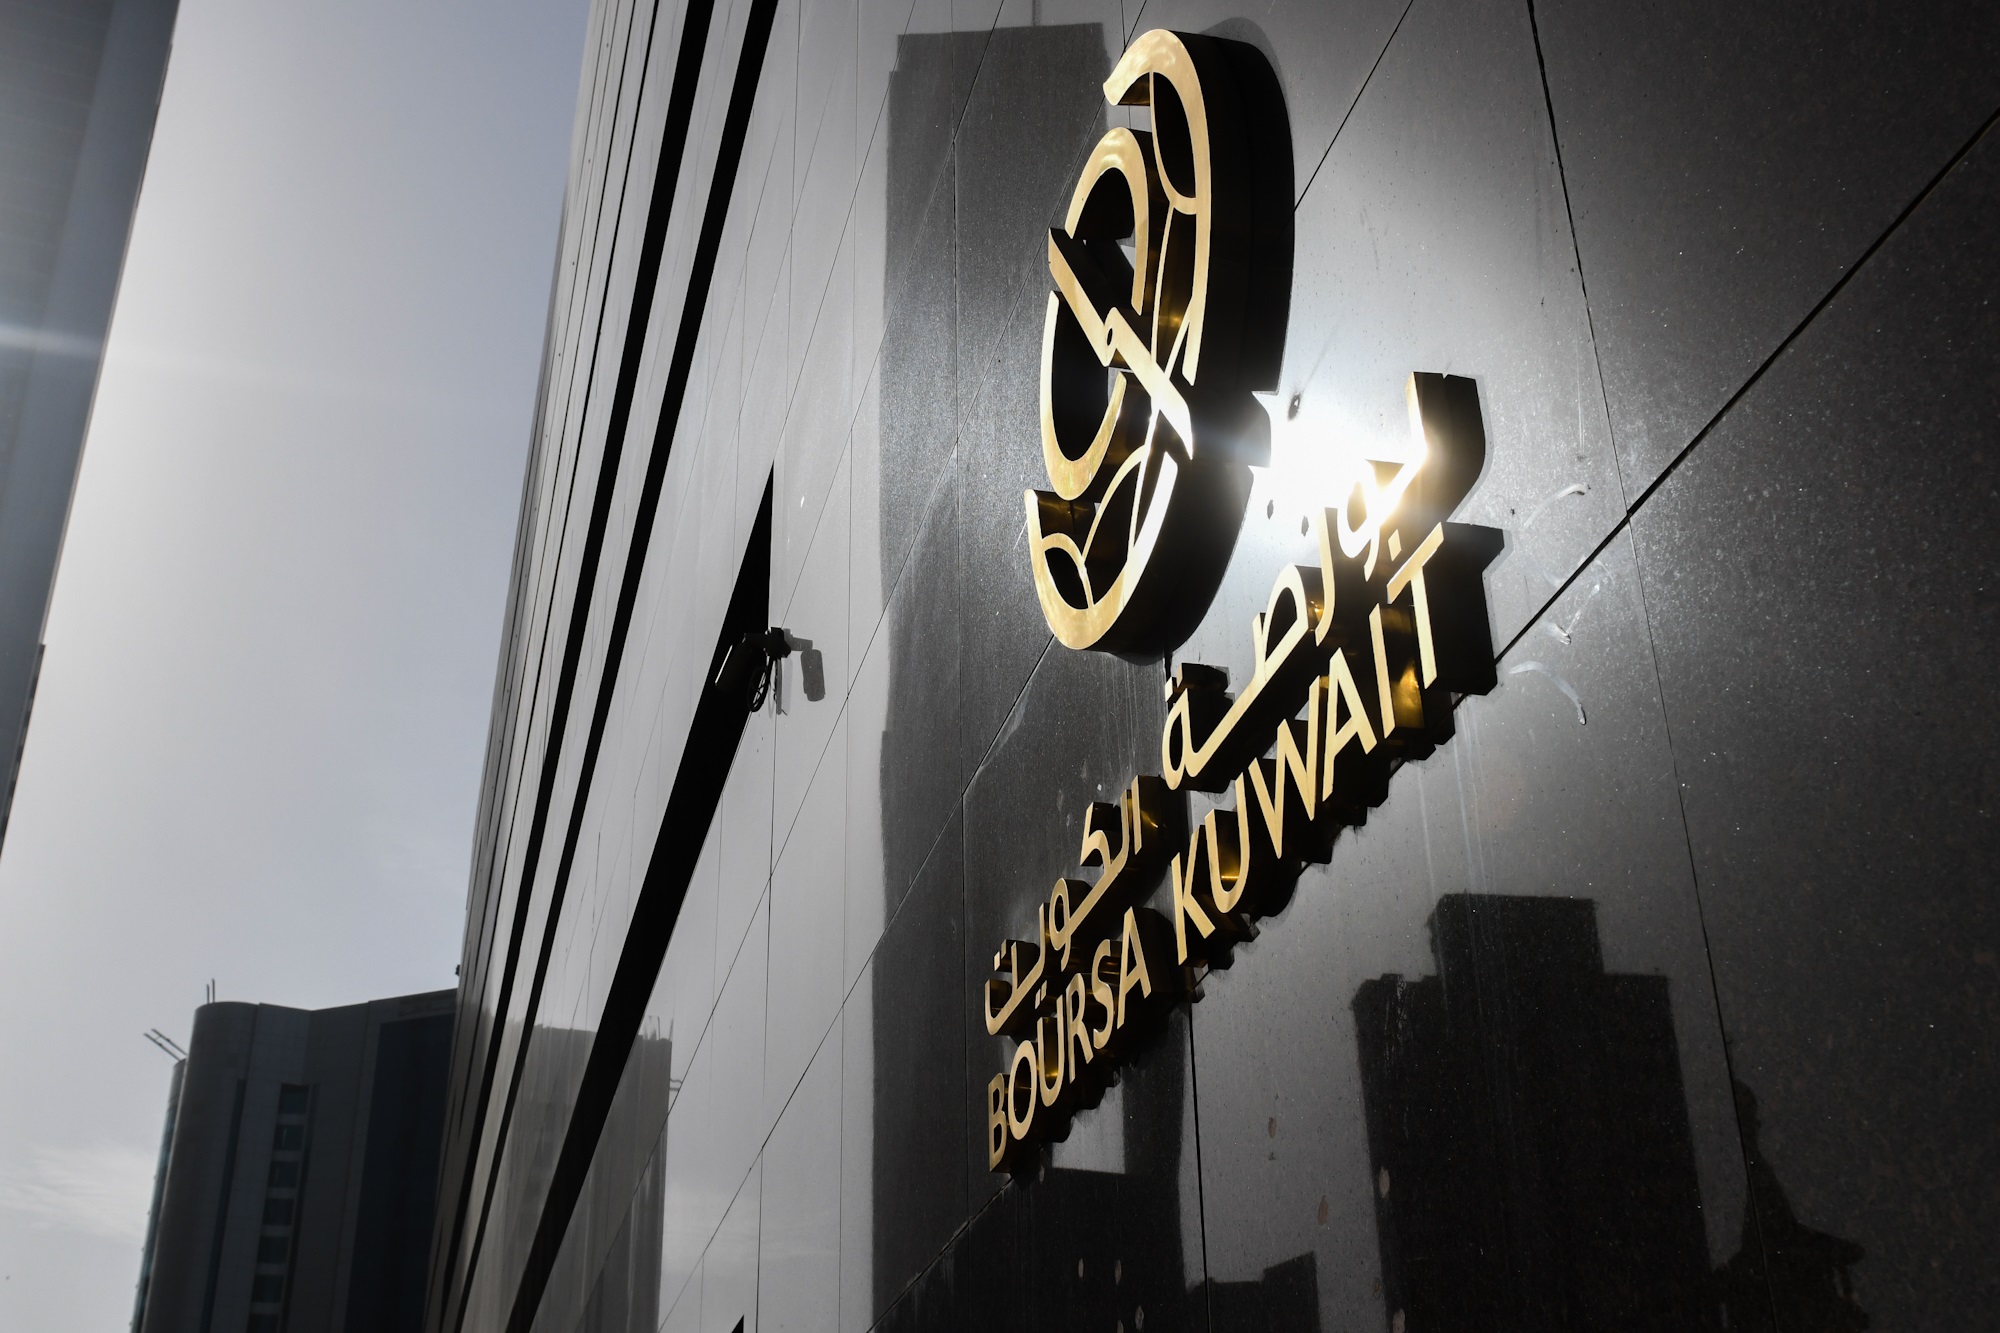 بورصة الكويت تغلق تعاملاتها على ارتفاع مؤشرها العام 14ر50 نقطة ليبلغ 36ر7138 بنسبة 71ر0 في المئة                                                                                                                                                          